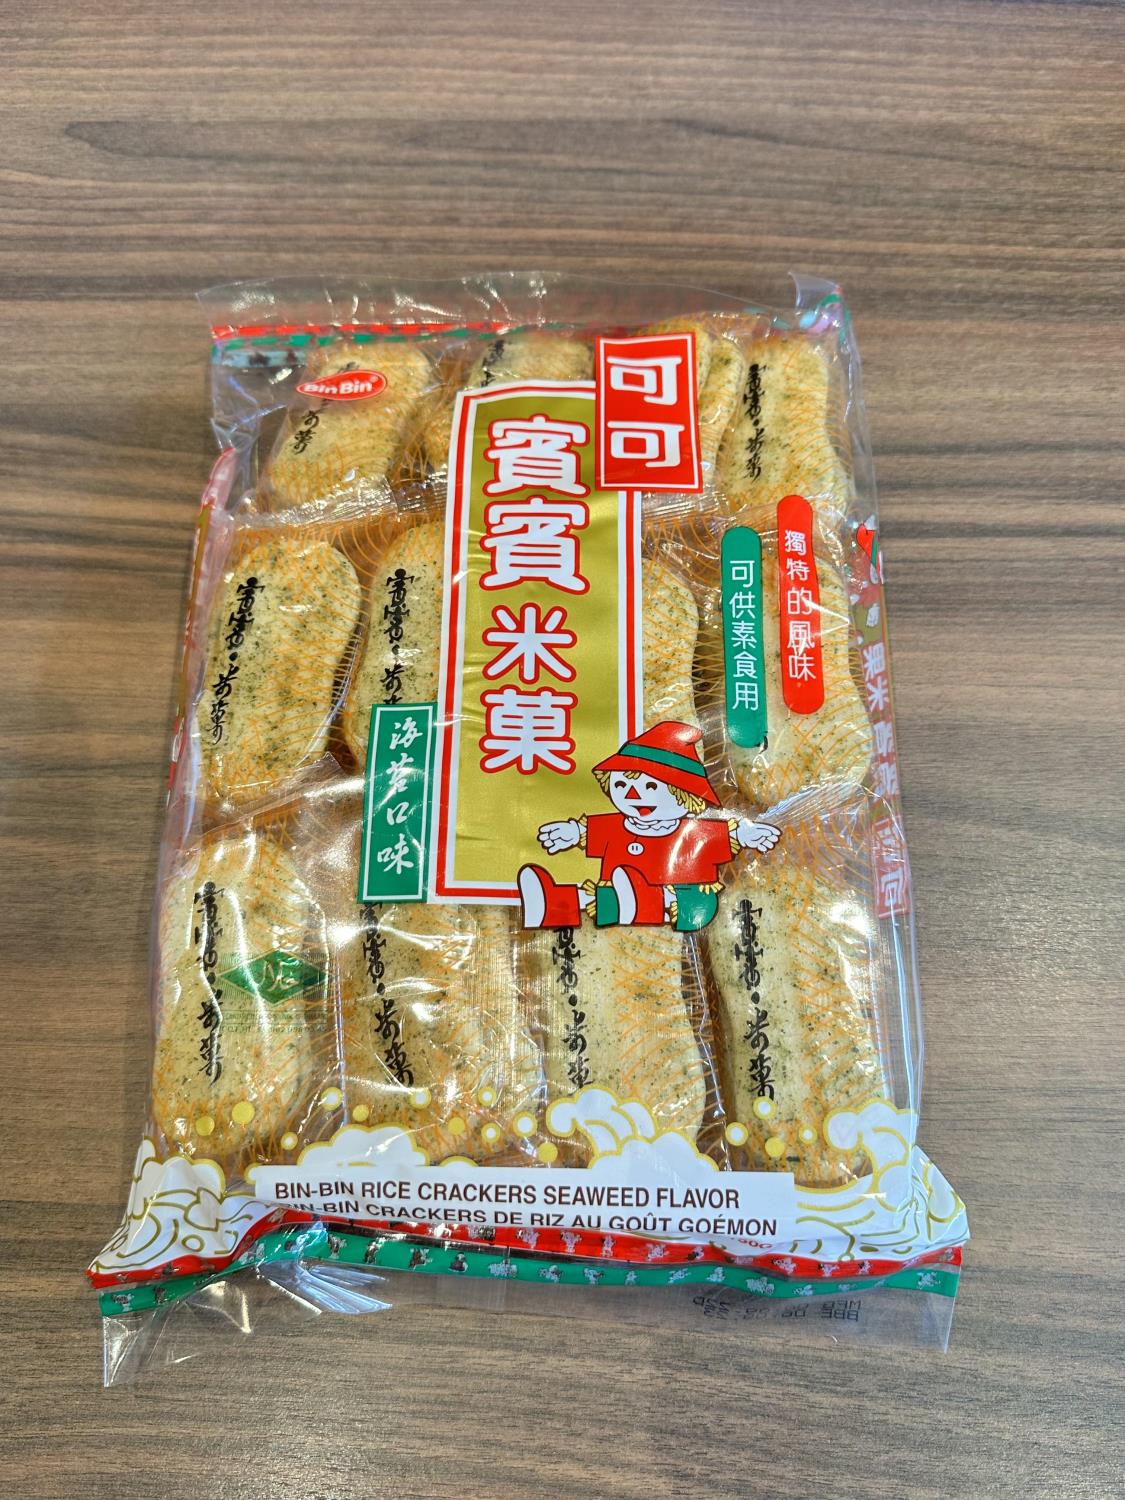 Rice crackers seaweed flavor